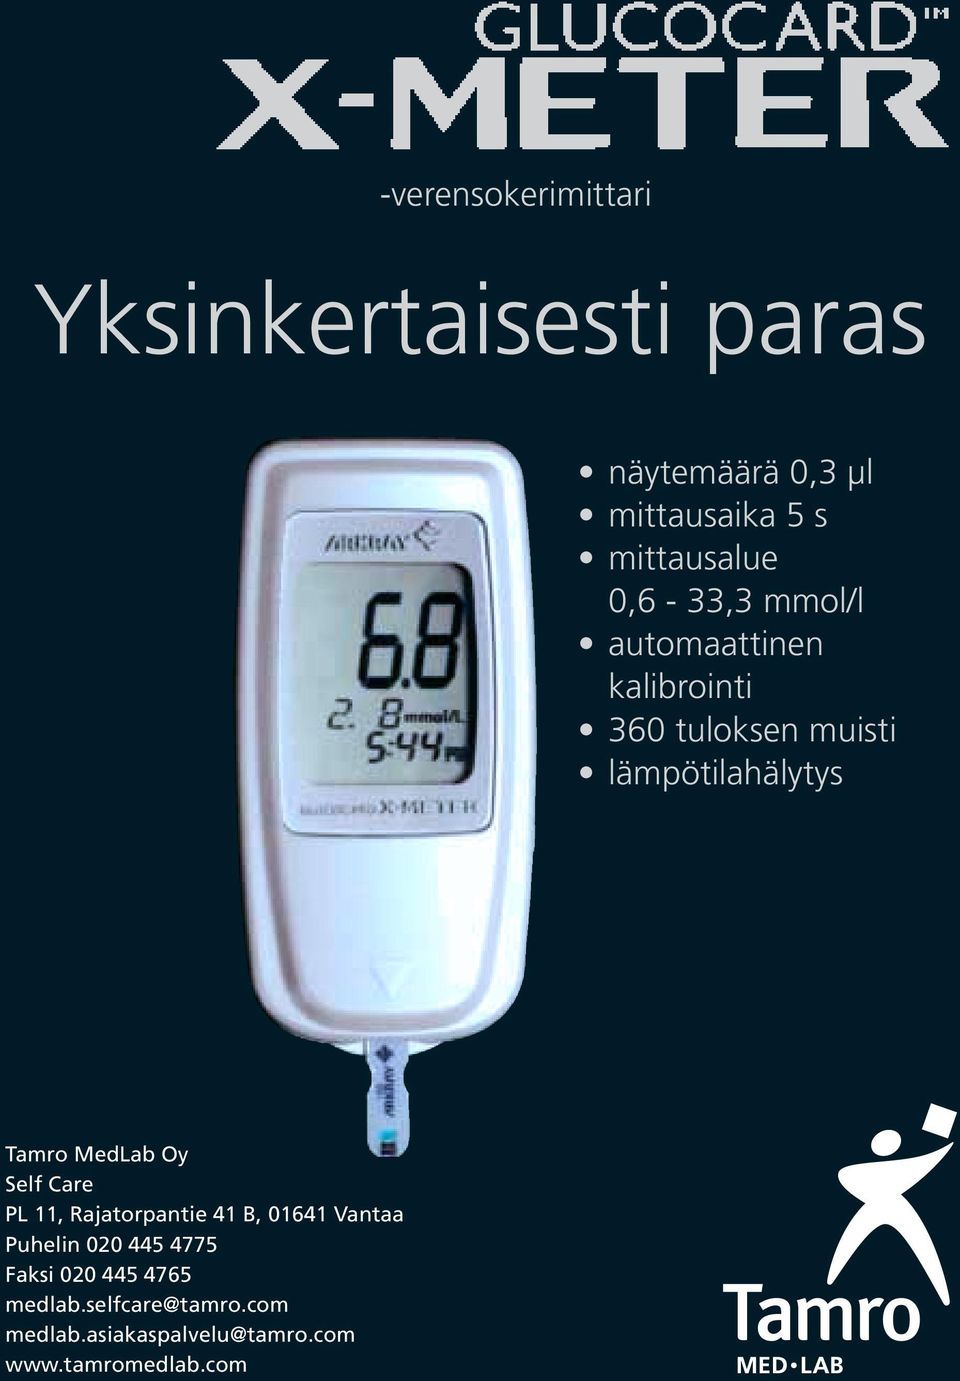 lämpötilahälytys Tamro MedLab Oy Self Care PL 11, Rajatorpantie 41 B, 01641 Vantaa